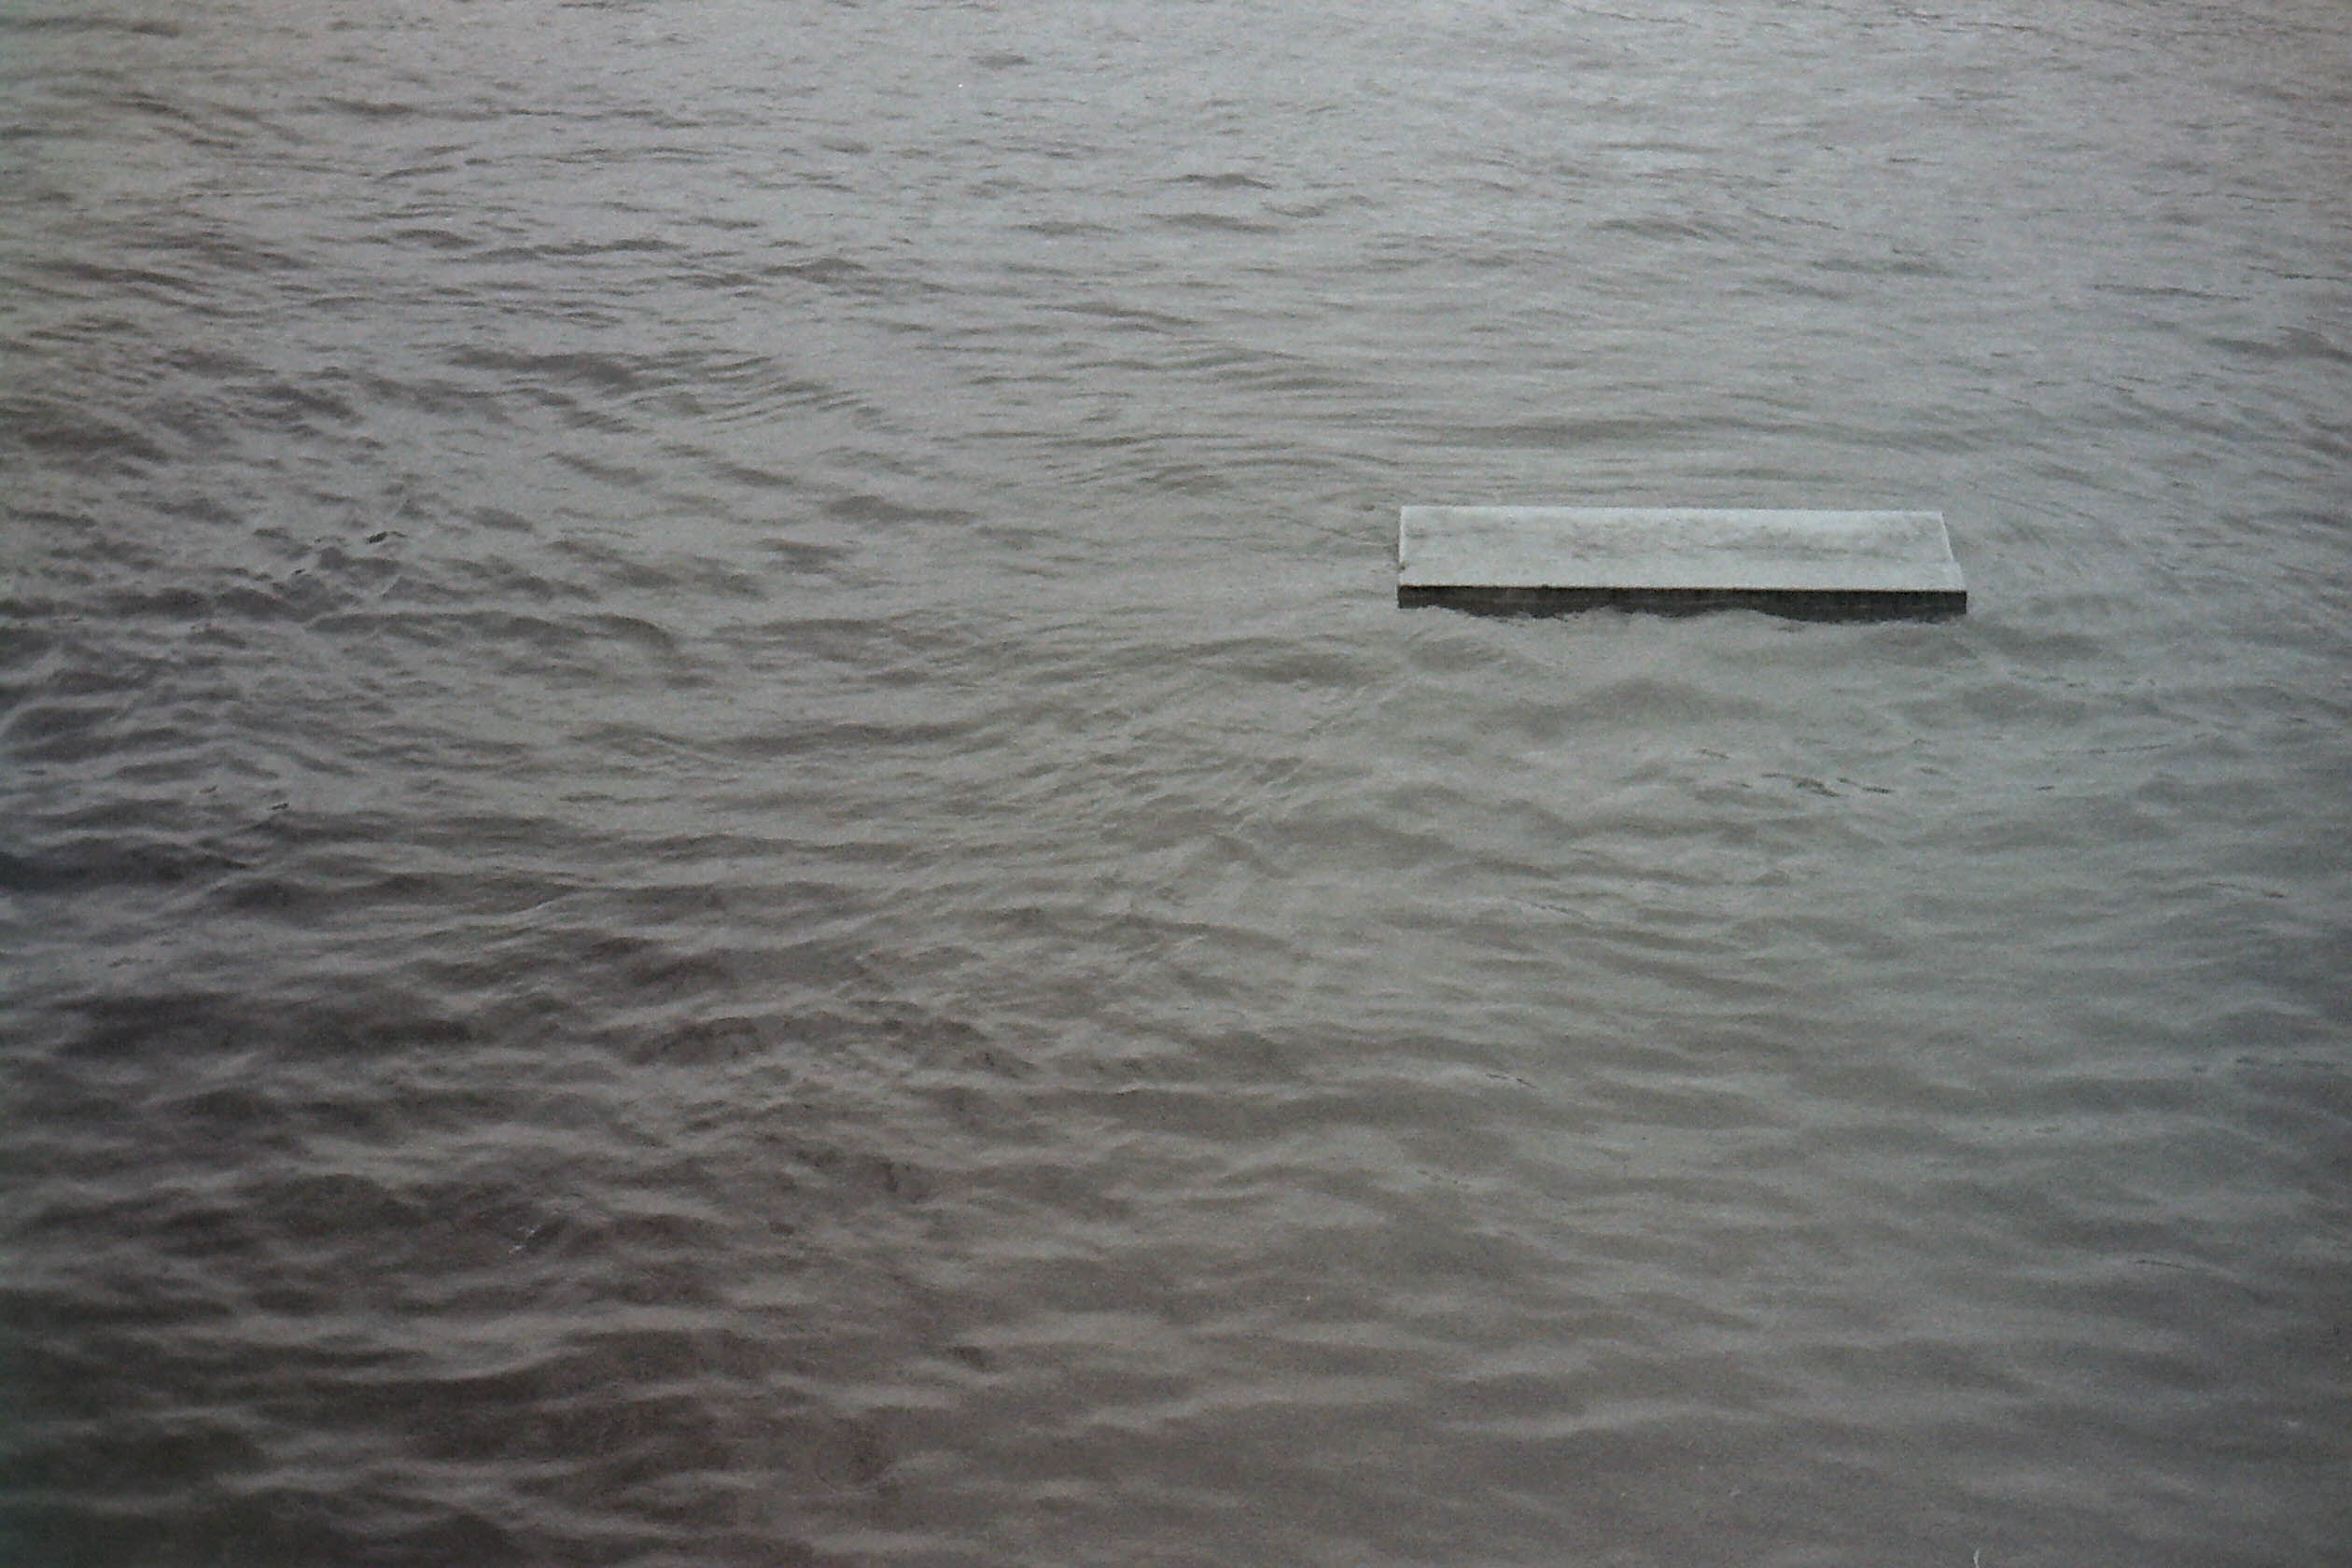 banc de pierre submergé par la crue de la seine à paris en noir et blanc